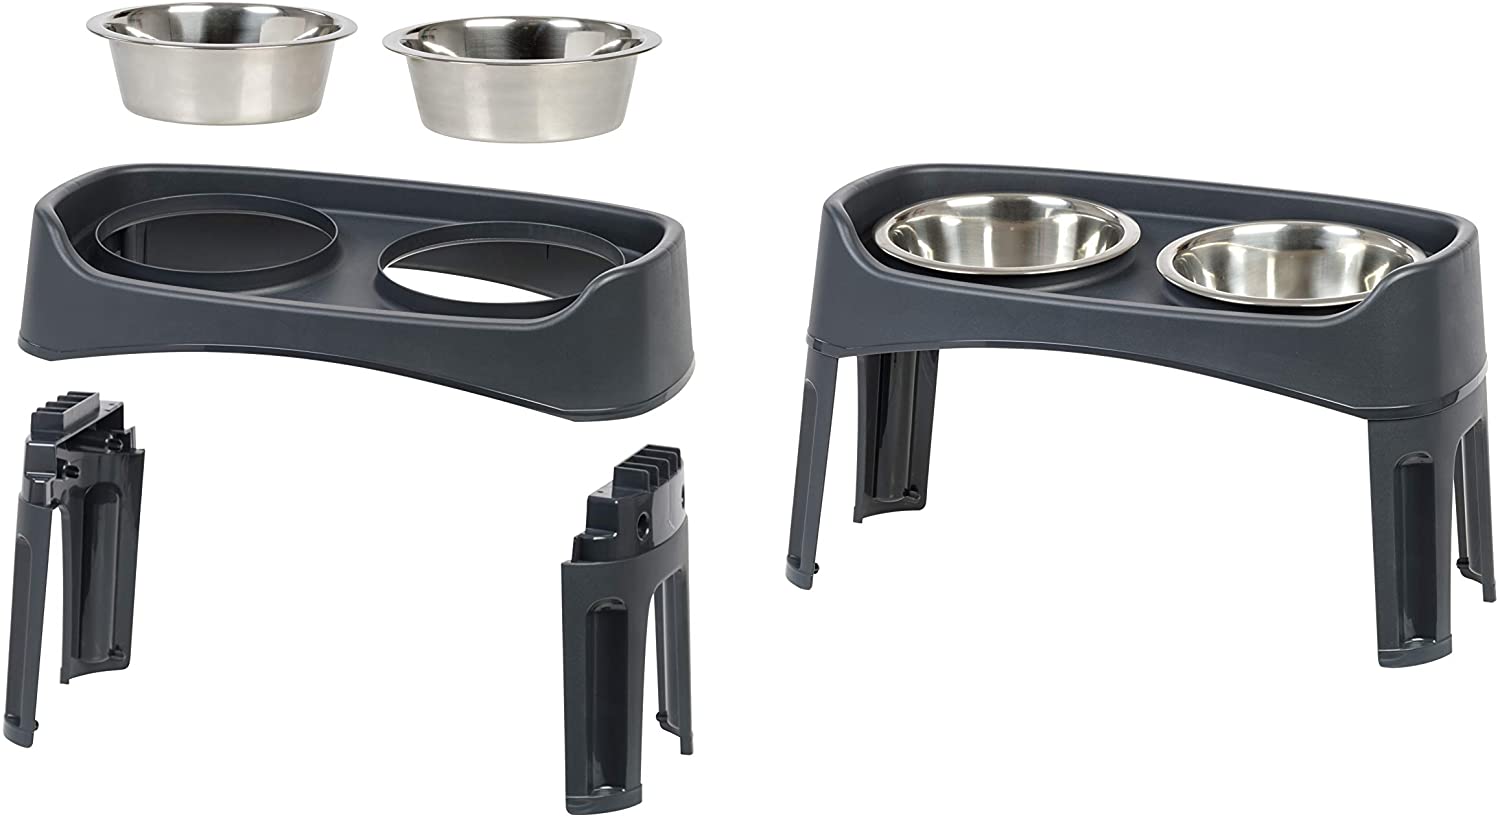  Iris Ohyama, soporte con 2 cuencos elevados de acero inoxidable, agua y comida para perros - Dog Feeder - Plástico, gris, 54,2 x 29,8 x 12 cm 